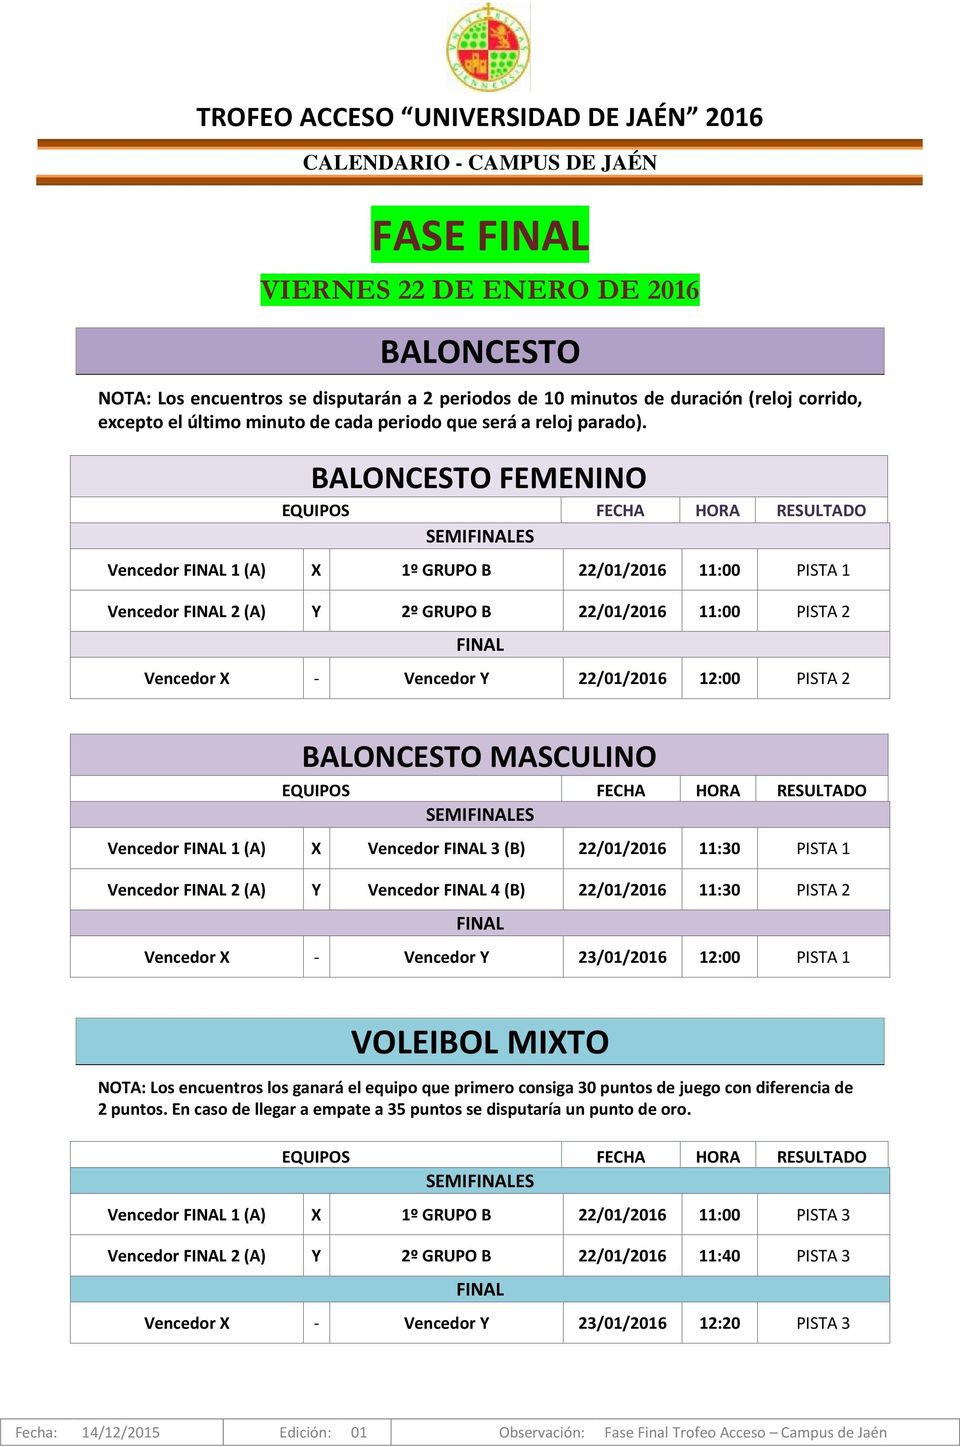 MASCULINO SEMIES Vencedor 1 (A) X Vencedor 3 (B) 22/01/2016 11:30 PISTA 1 Vencedor 2 (A) Y Vencedor 4 (B) 22/01/2016 11:30 PISTA 2 Vencedor X - Vencedor Y 23/01/2016 12:00 PISTA 1 VOLEIBOL MIXTO